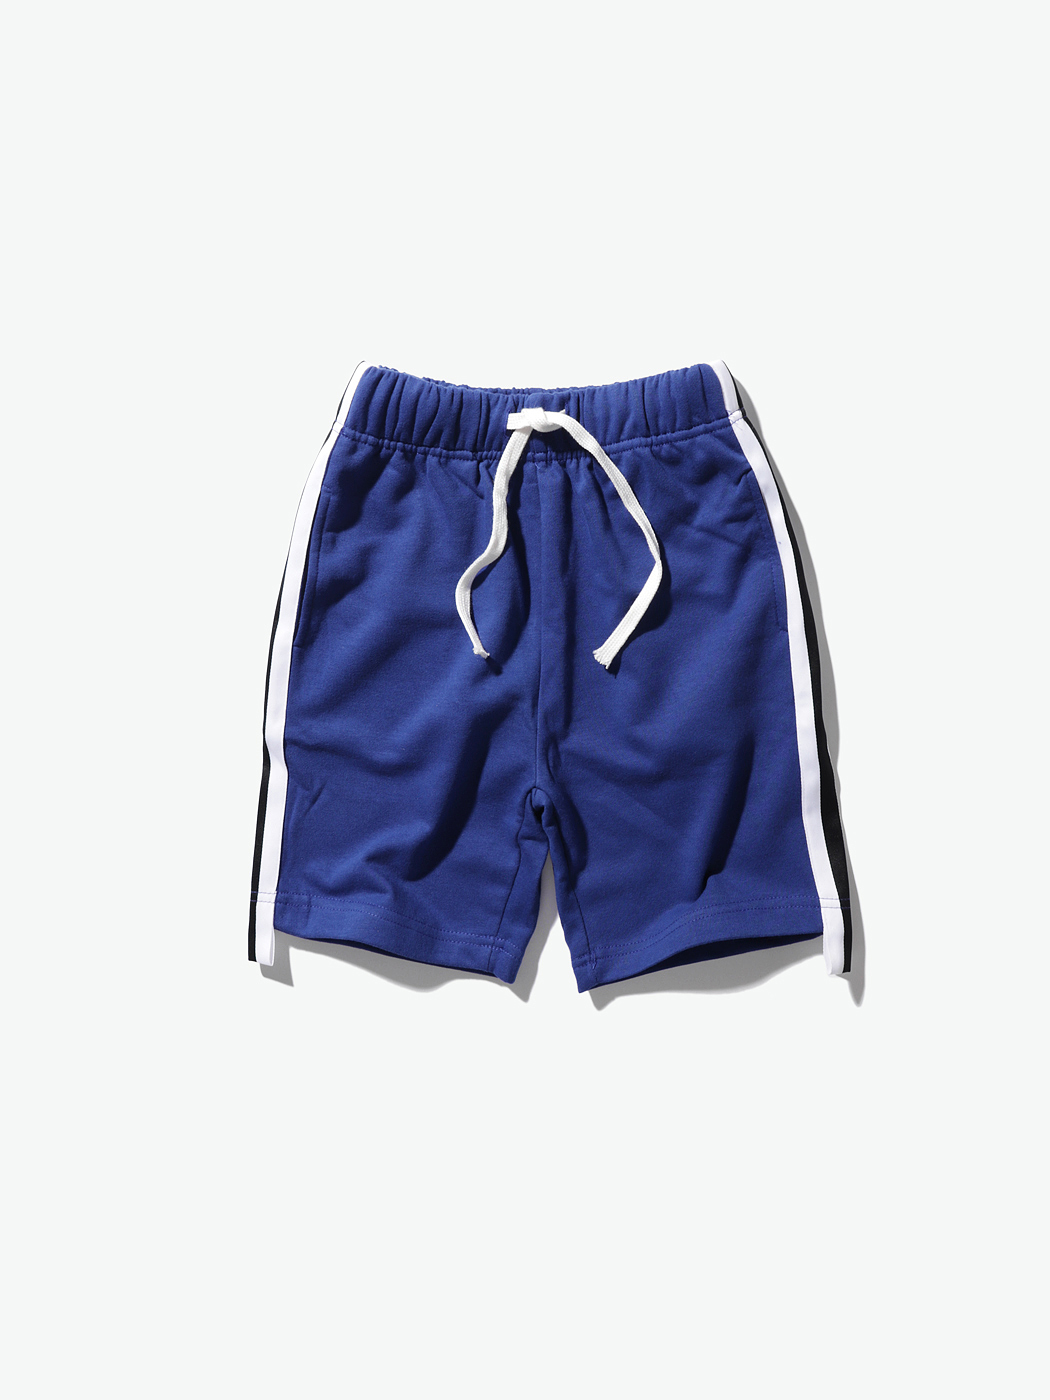 PINKORANGE|男|PINKORANGE 侧边条纹儿童短裤 蓝色